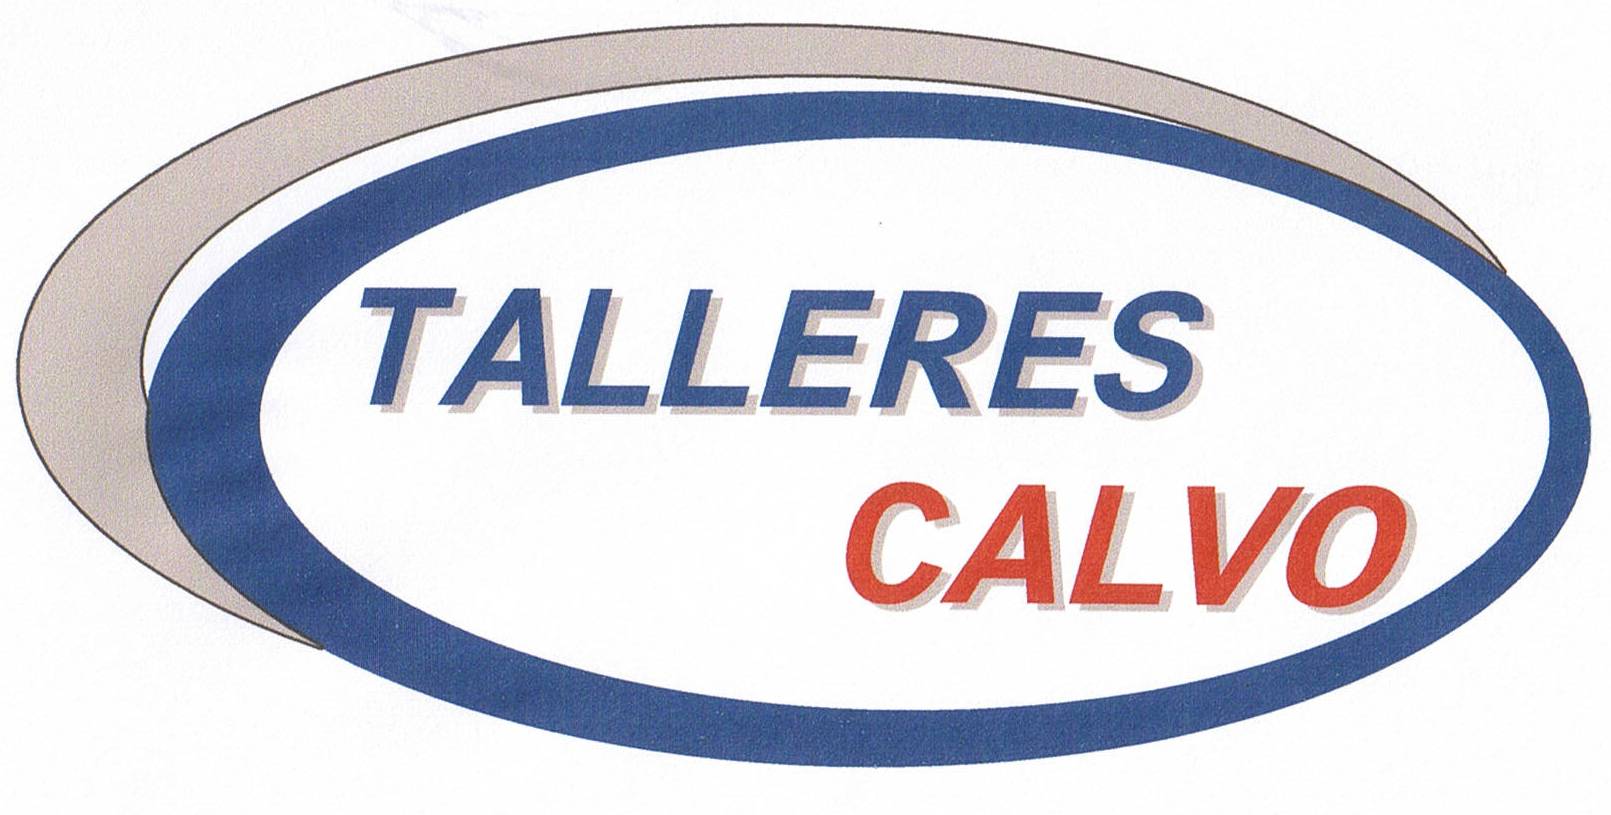 Talleres Calvo